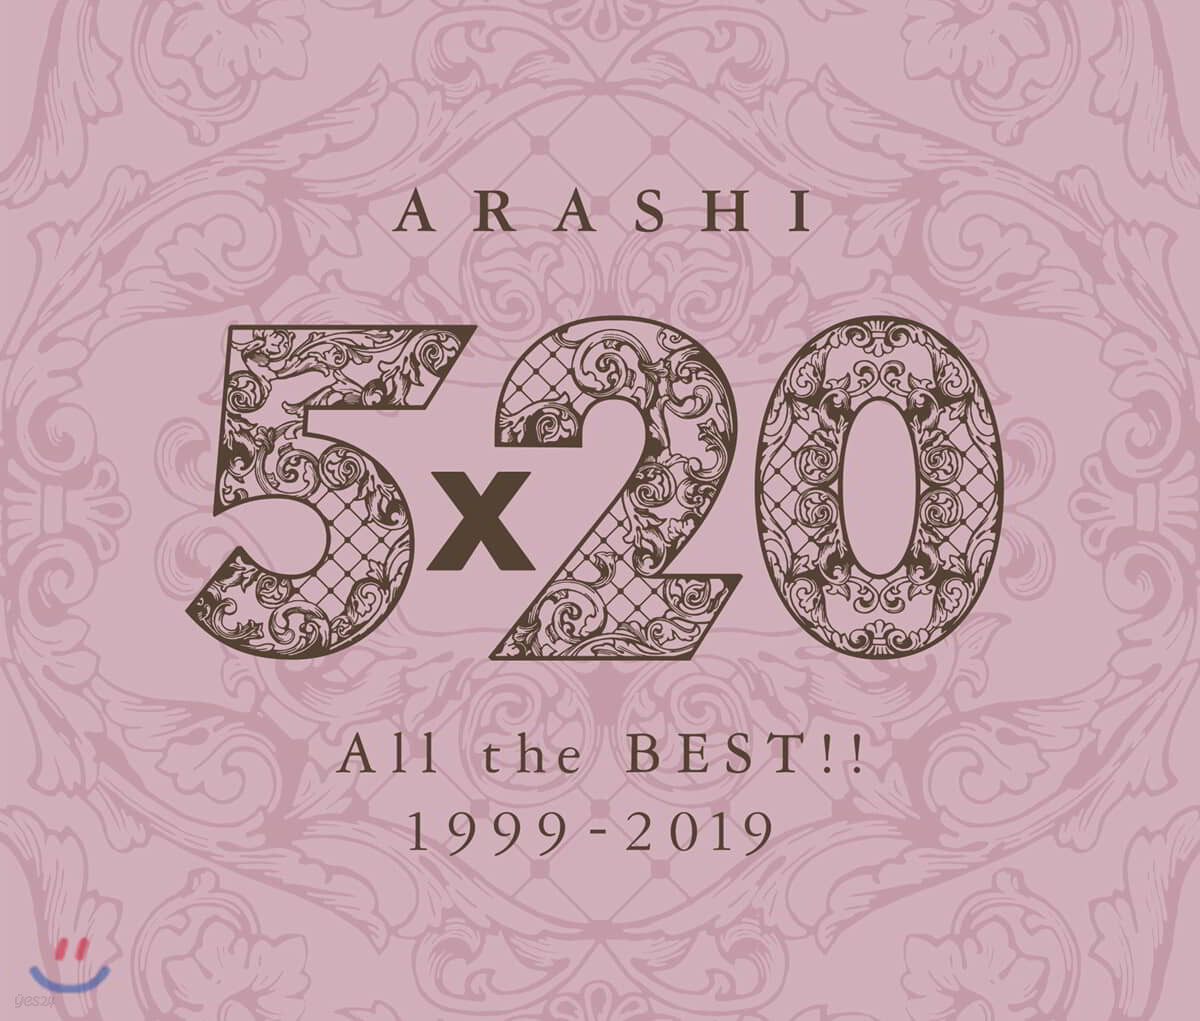 아라시 데뷔 20주년 베스트 앨범 (Arashi - 5×20 All the BEST!! 1999-2019) [통상반]